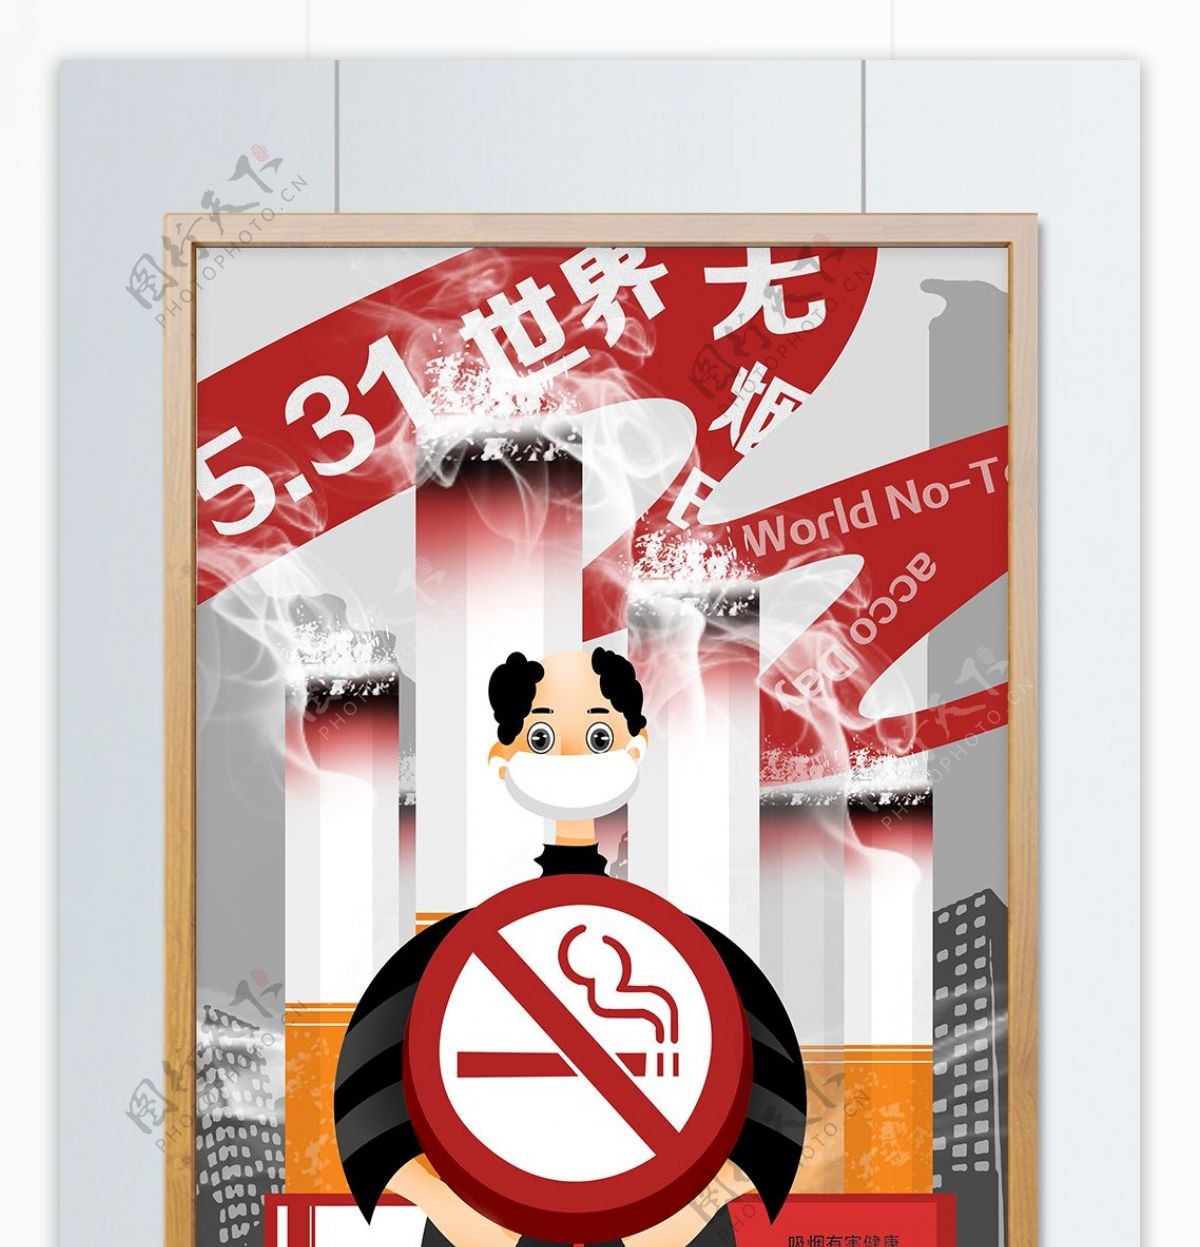 531世界无烟日禁烟日宣传插画